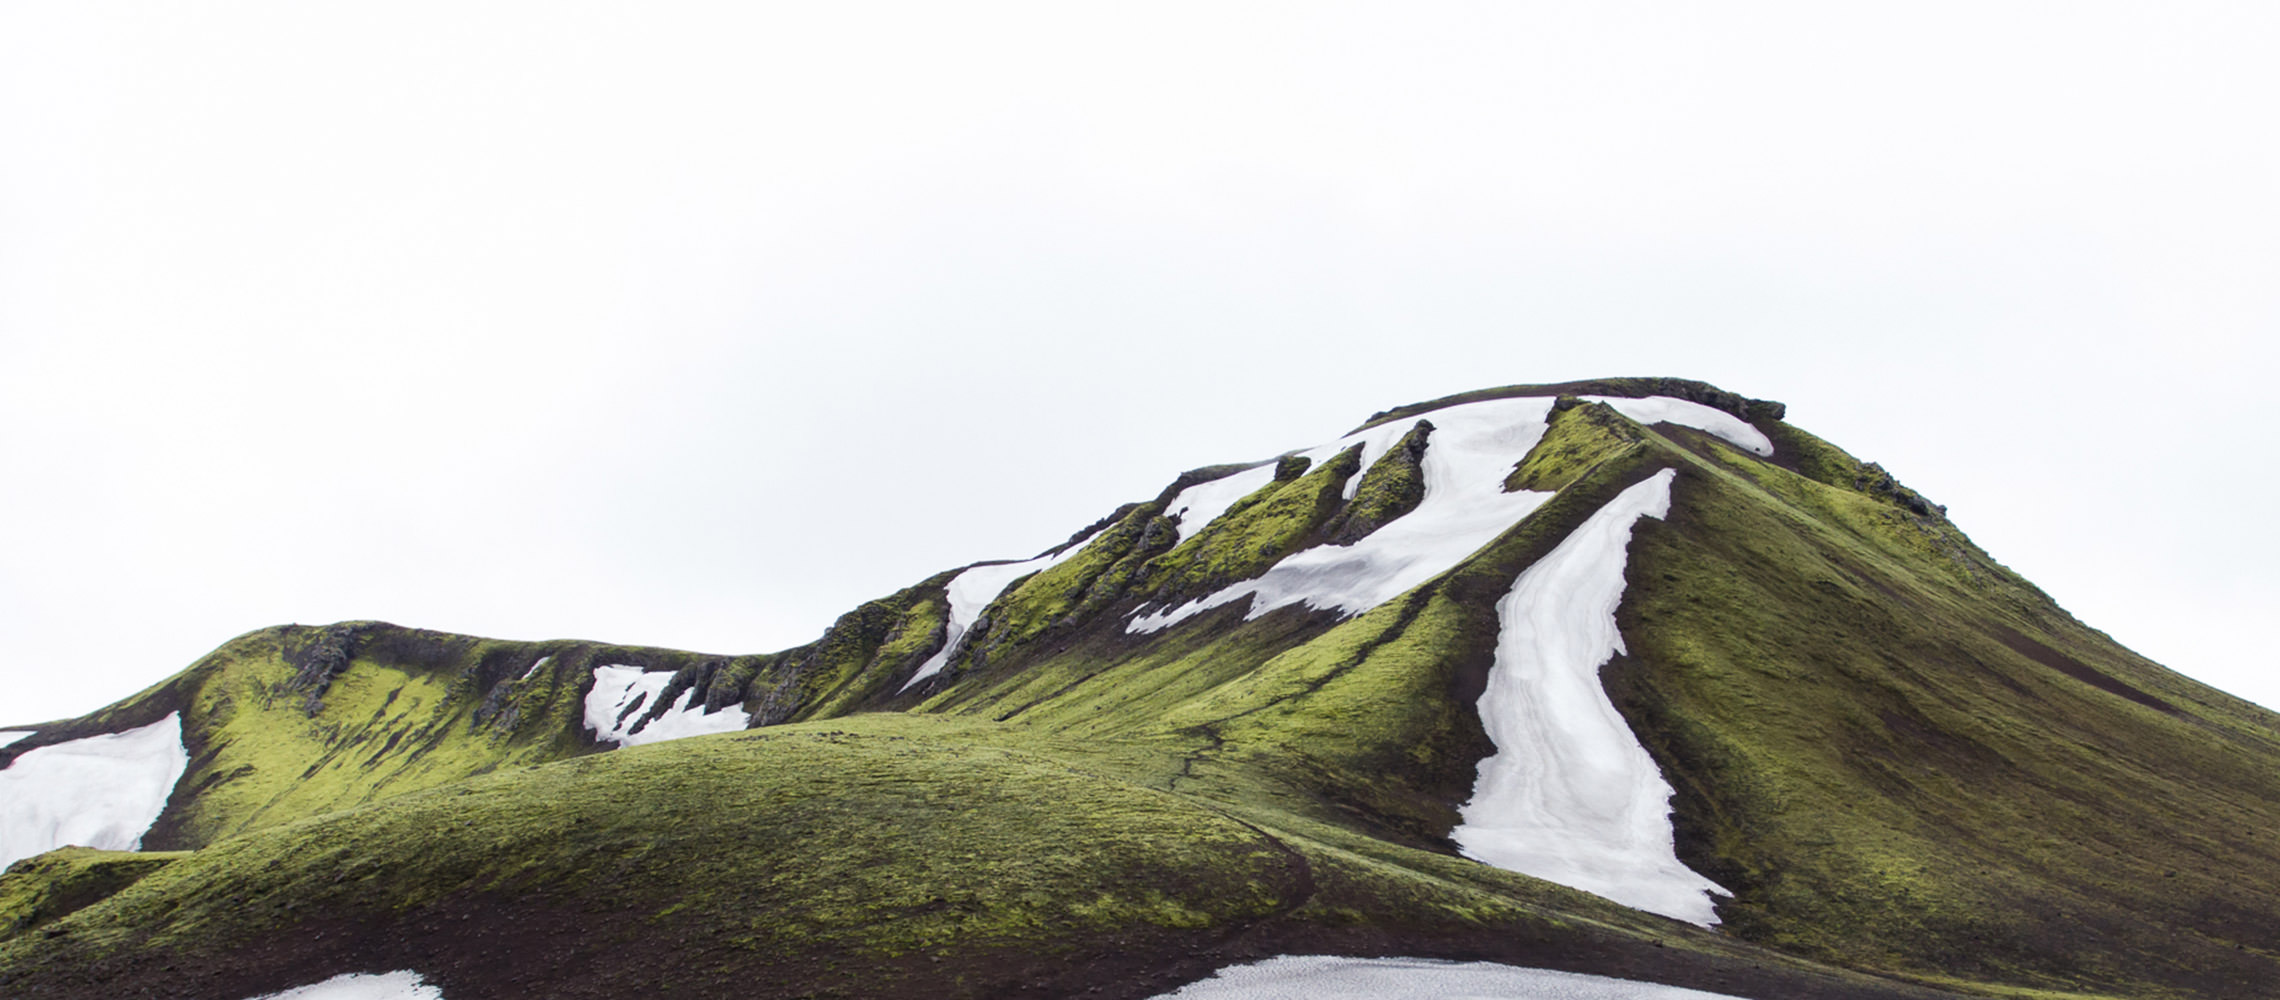 Cenário montanhoso coberto por grama verde com geleiras isoladas.